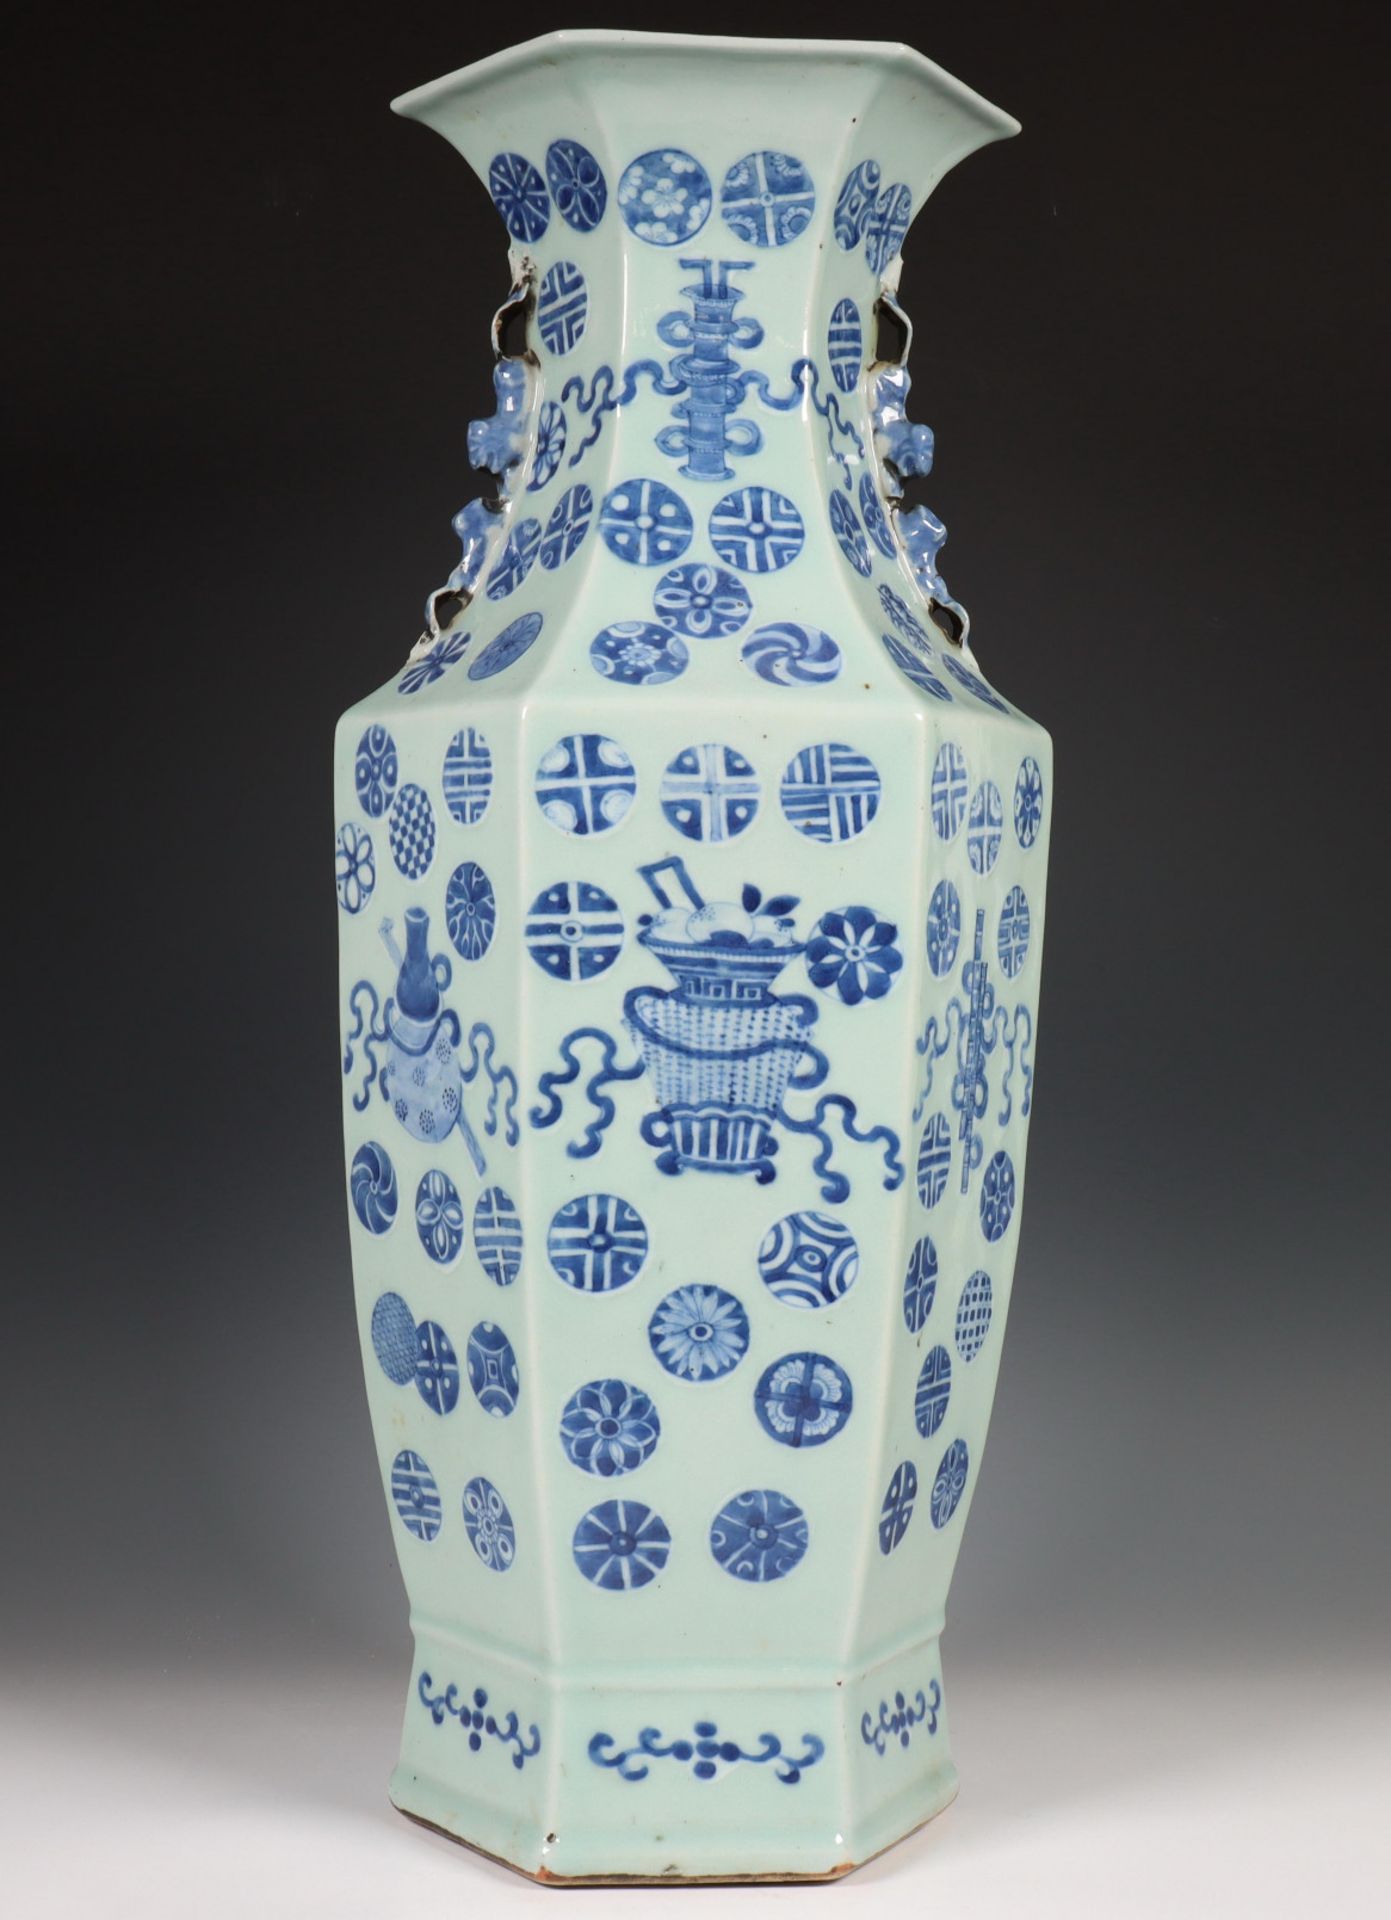 China, zeskantige blauw-wit porseleinen vaas, laat Qing dynastie, eind 19e eeuw,